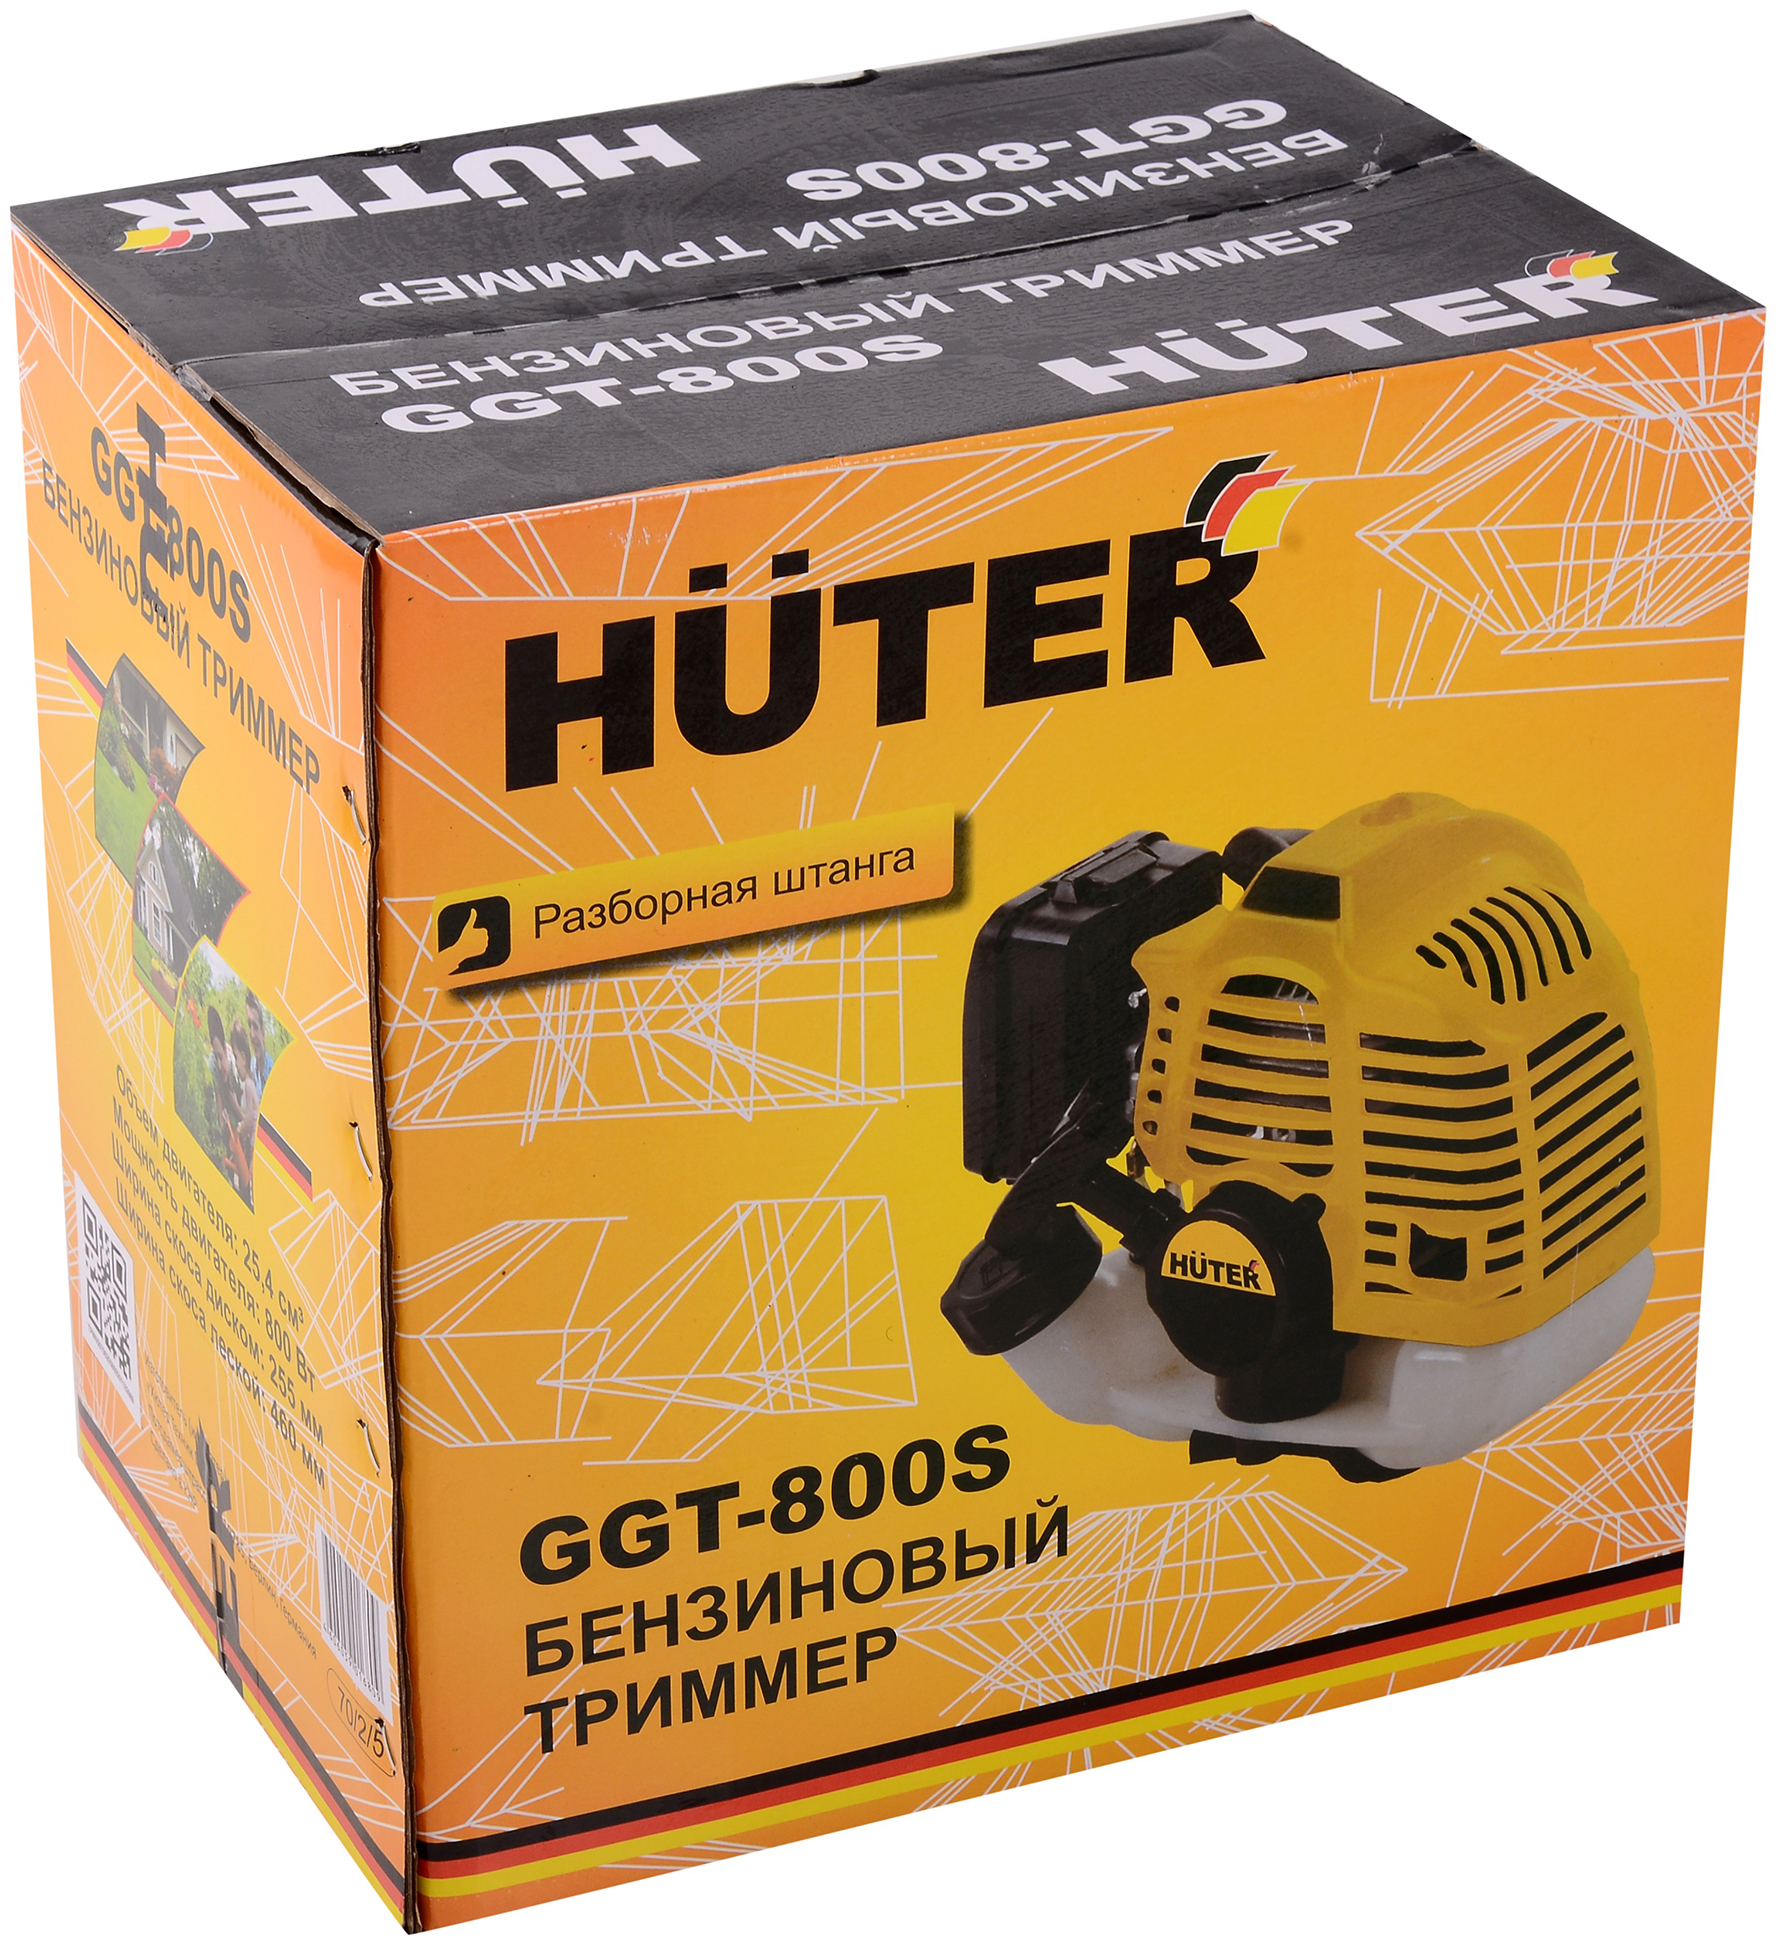 Бензиновый садовый триммер Huter GGT-800S 70/2/5 1,1 л.с.